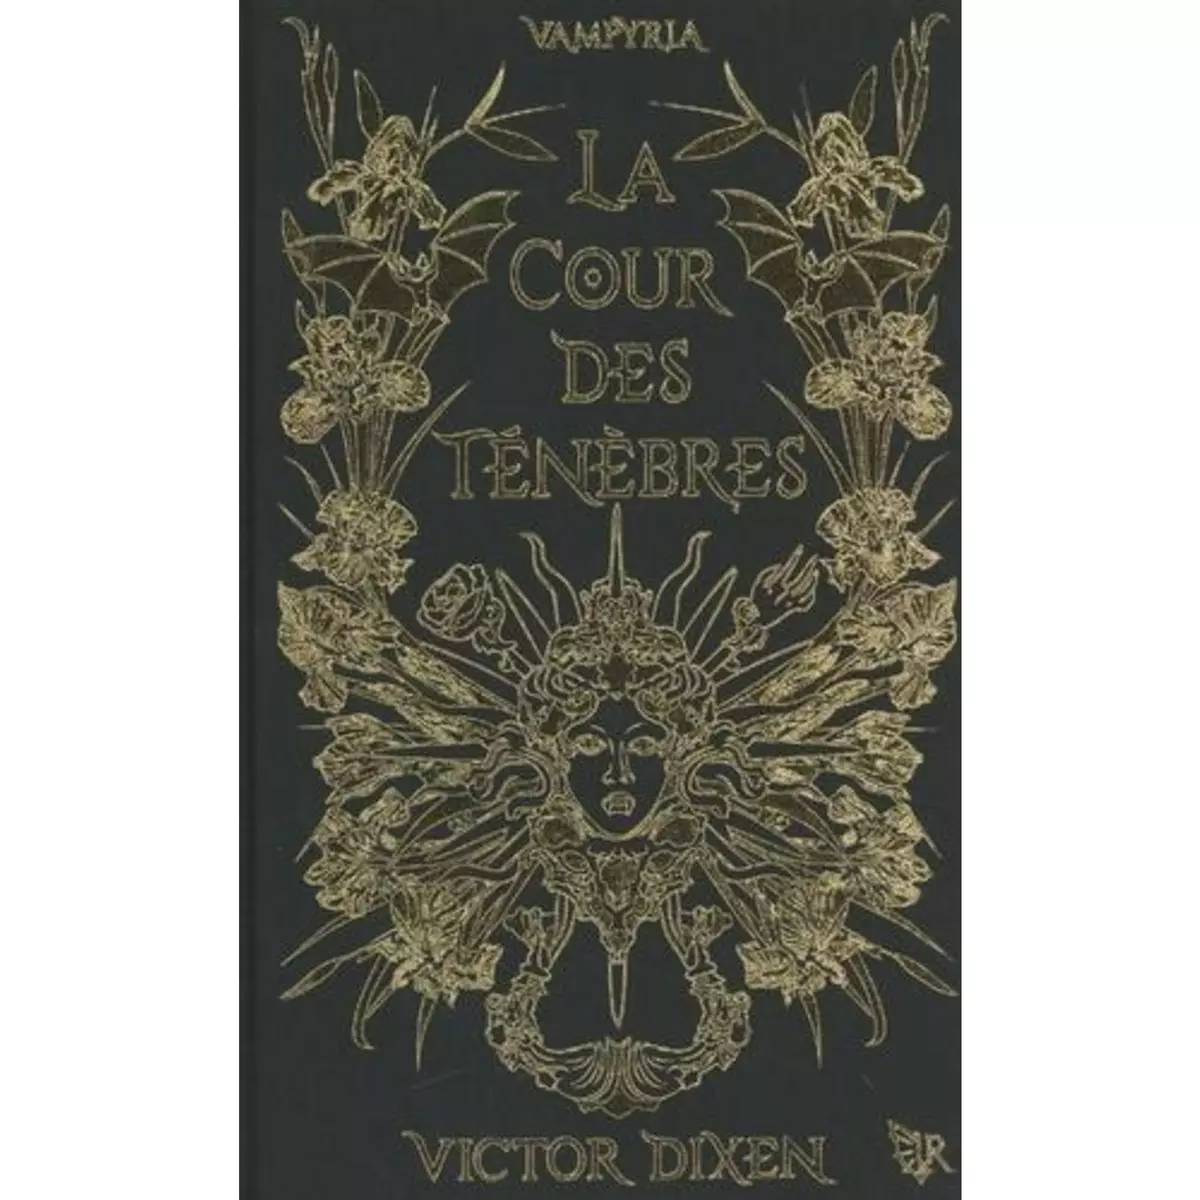  VAMPYRIA TOME 1 : LA COUR DES TENEBRES. EDITION LIMITEE, Dixen Victor